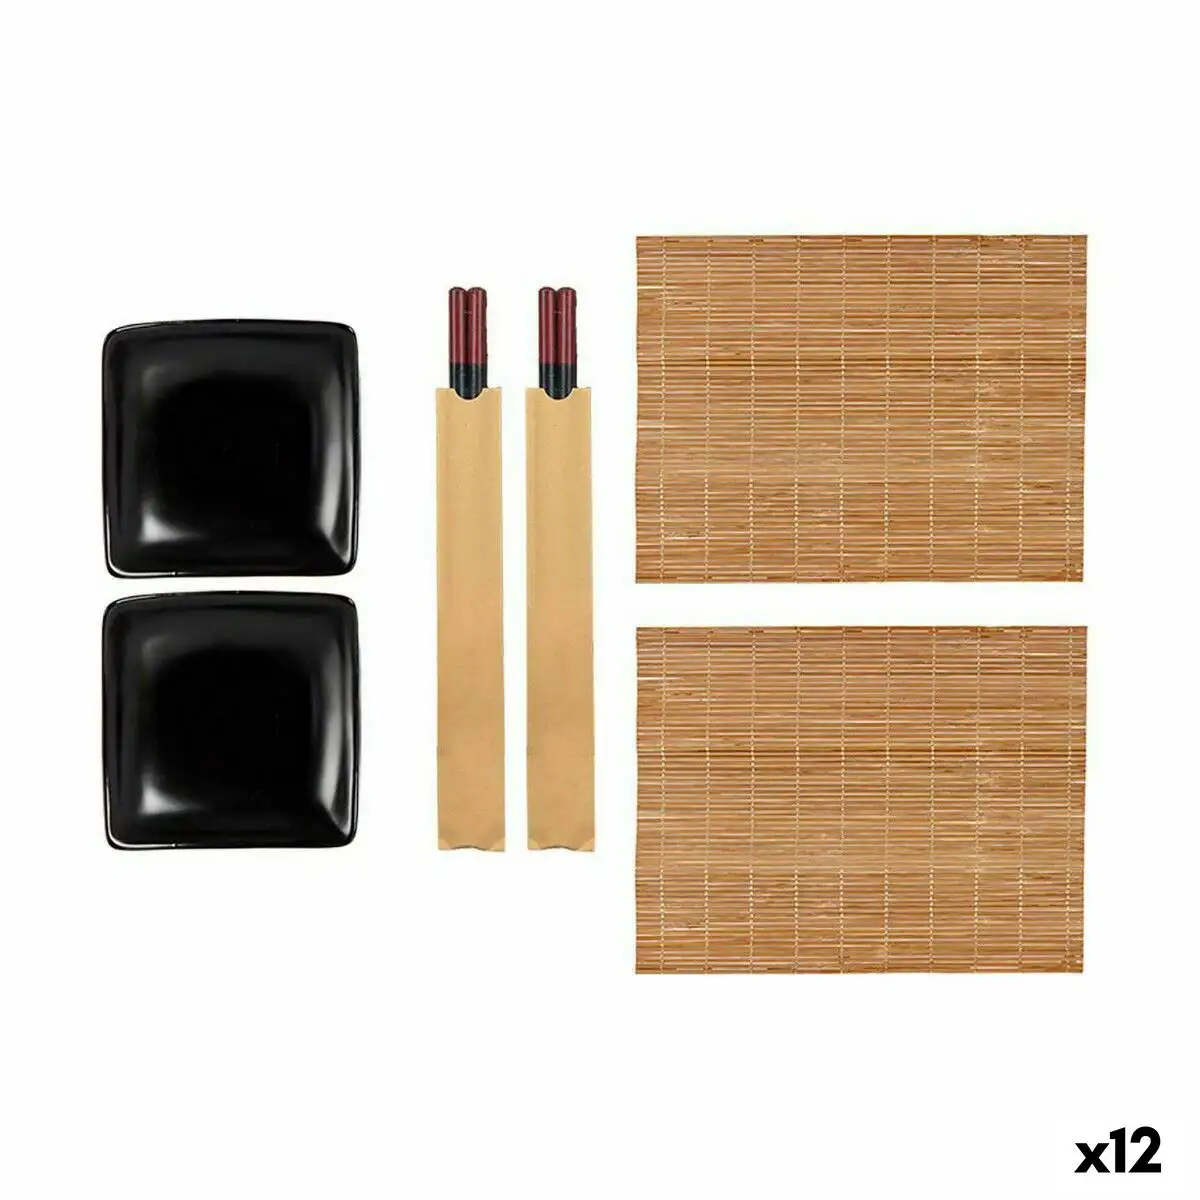 Set de sushi noir ceramique bambou 12 unites _4790. Bienvenue sur DIAYTAR SENEGAL - Où Choisir Rime avec Qualité. Explorez notre gamme diversifiée et découvrez des articles conçus pour répondre à vos attentes élevées.